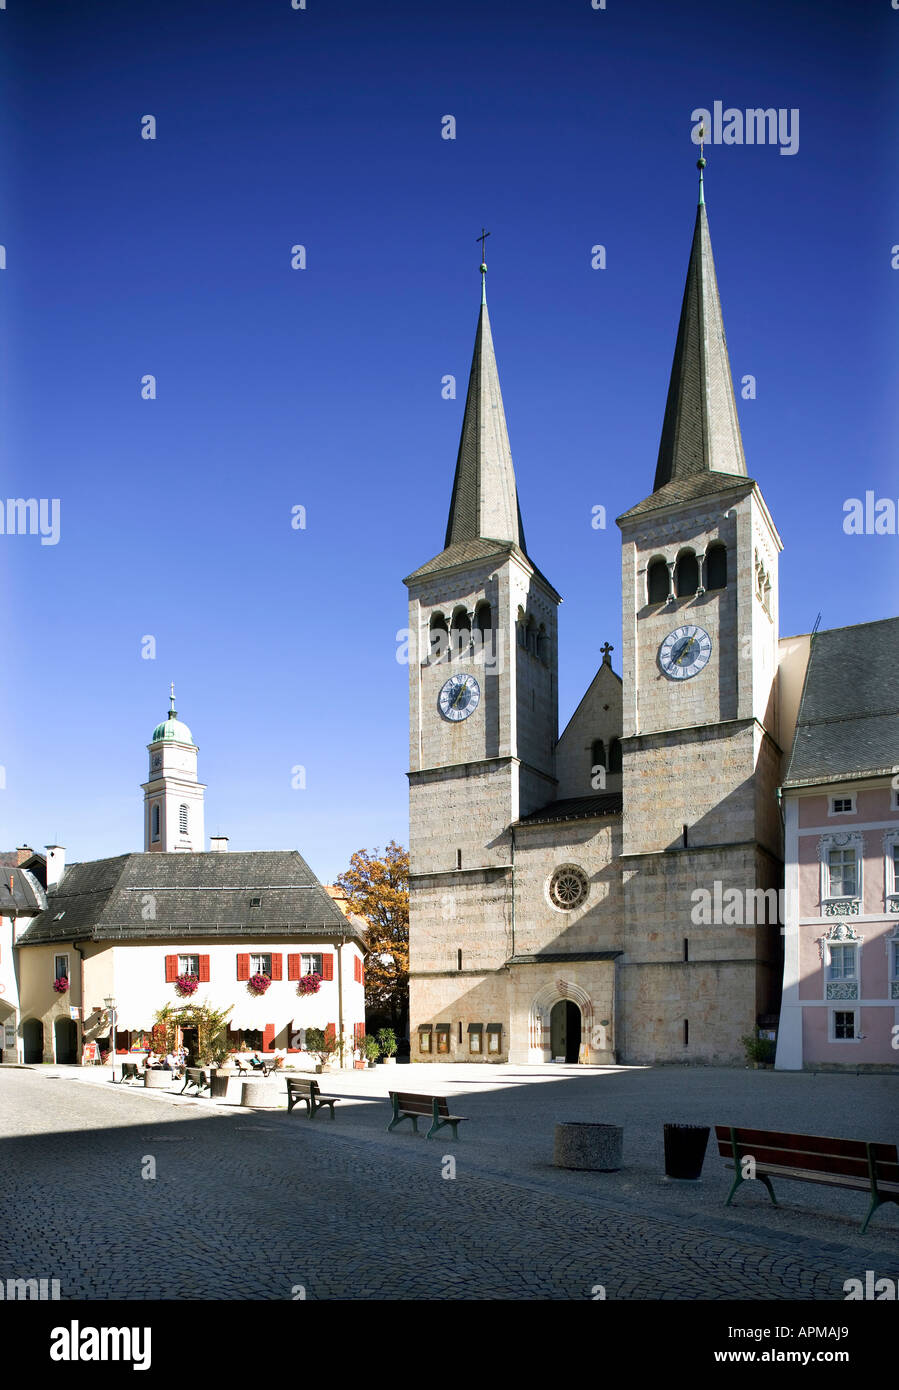 Germany, Bavaria, exterior of church Stock Photo